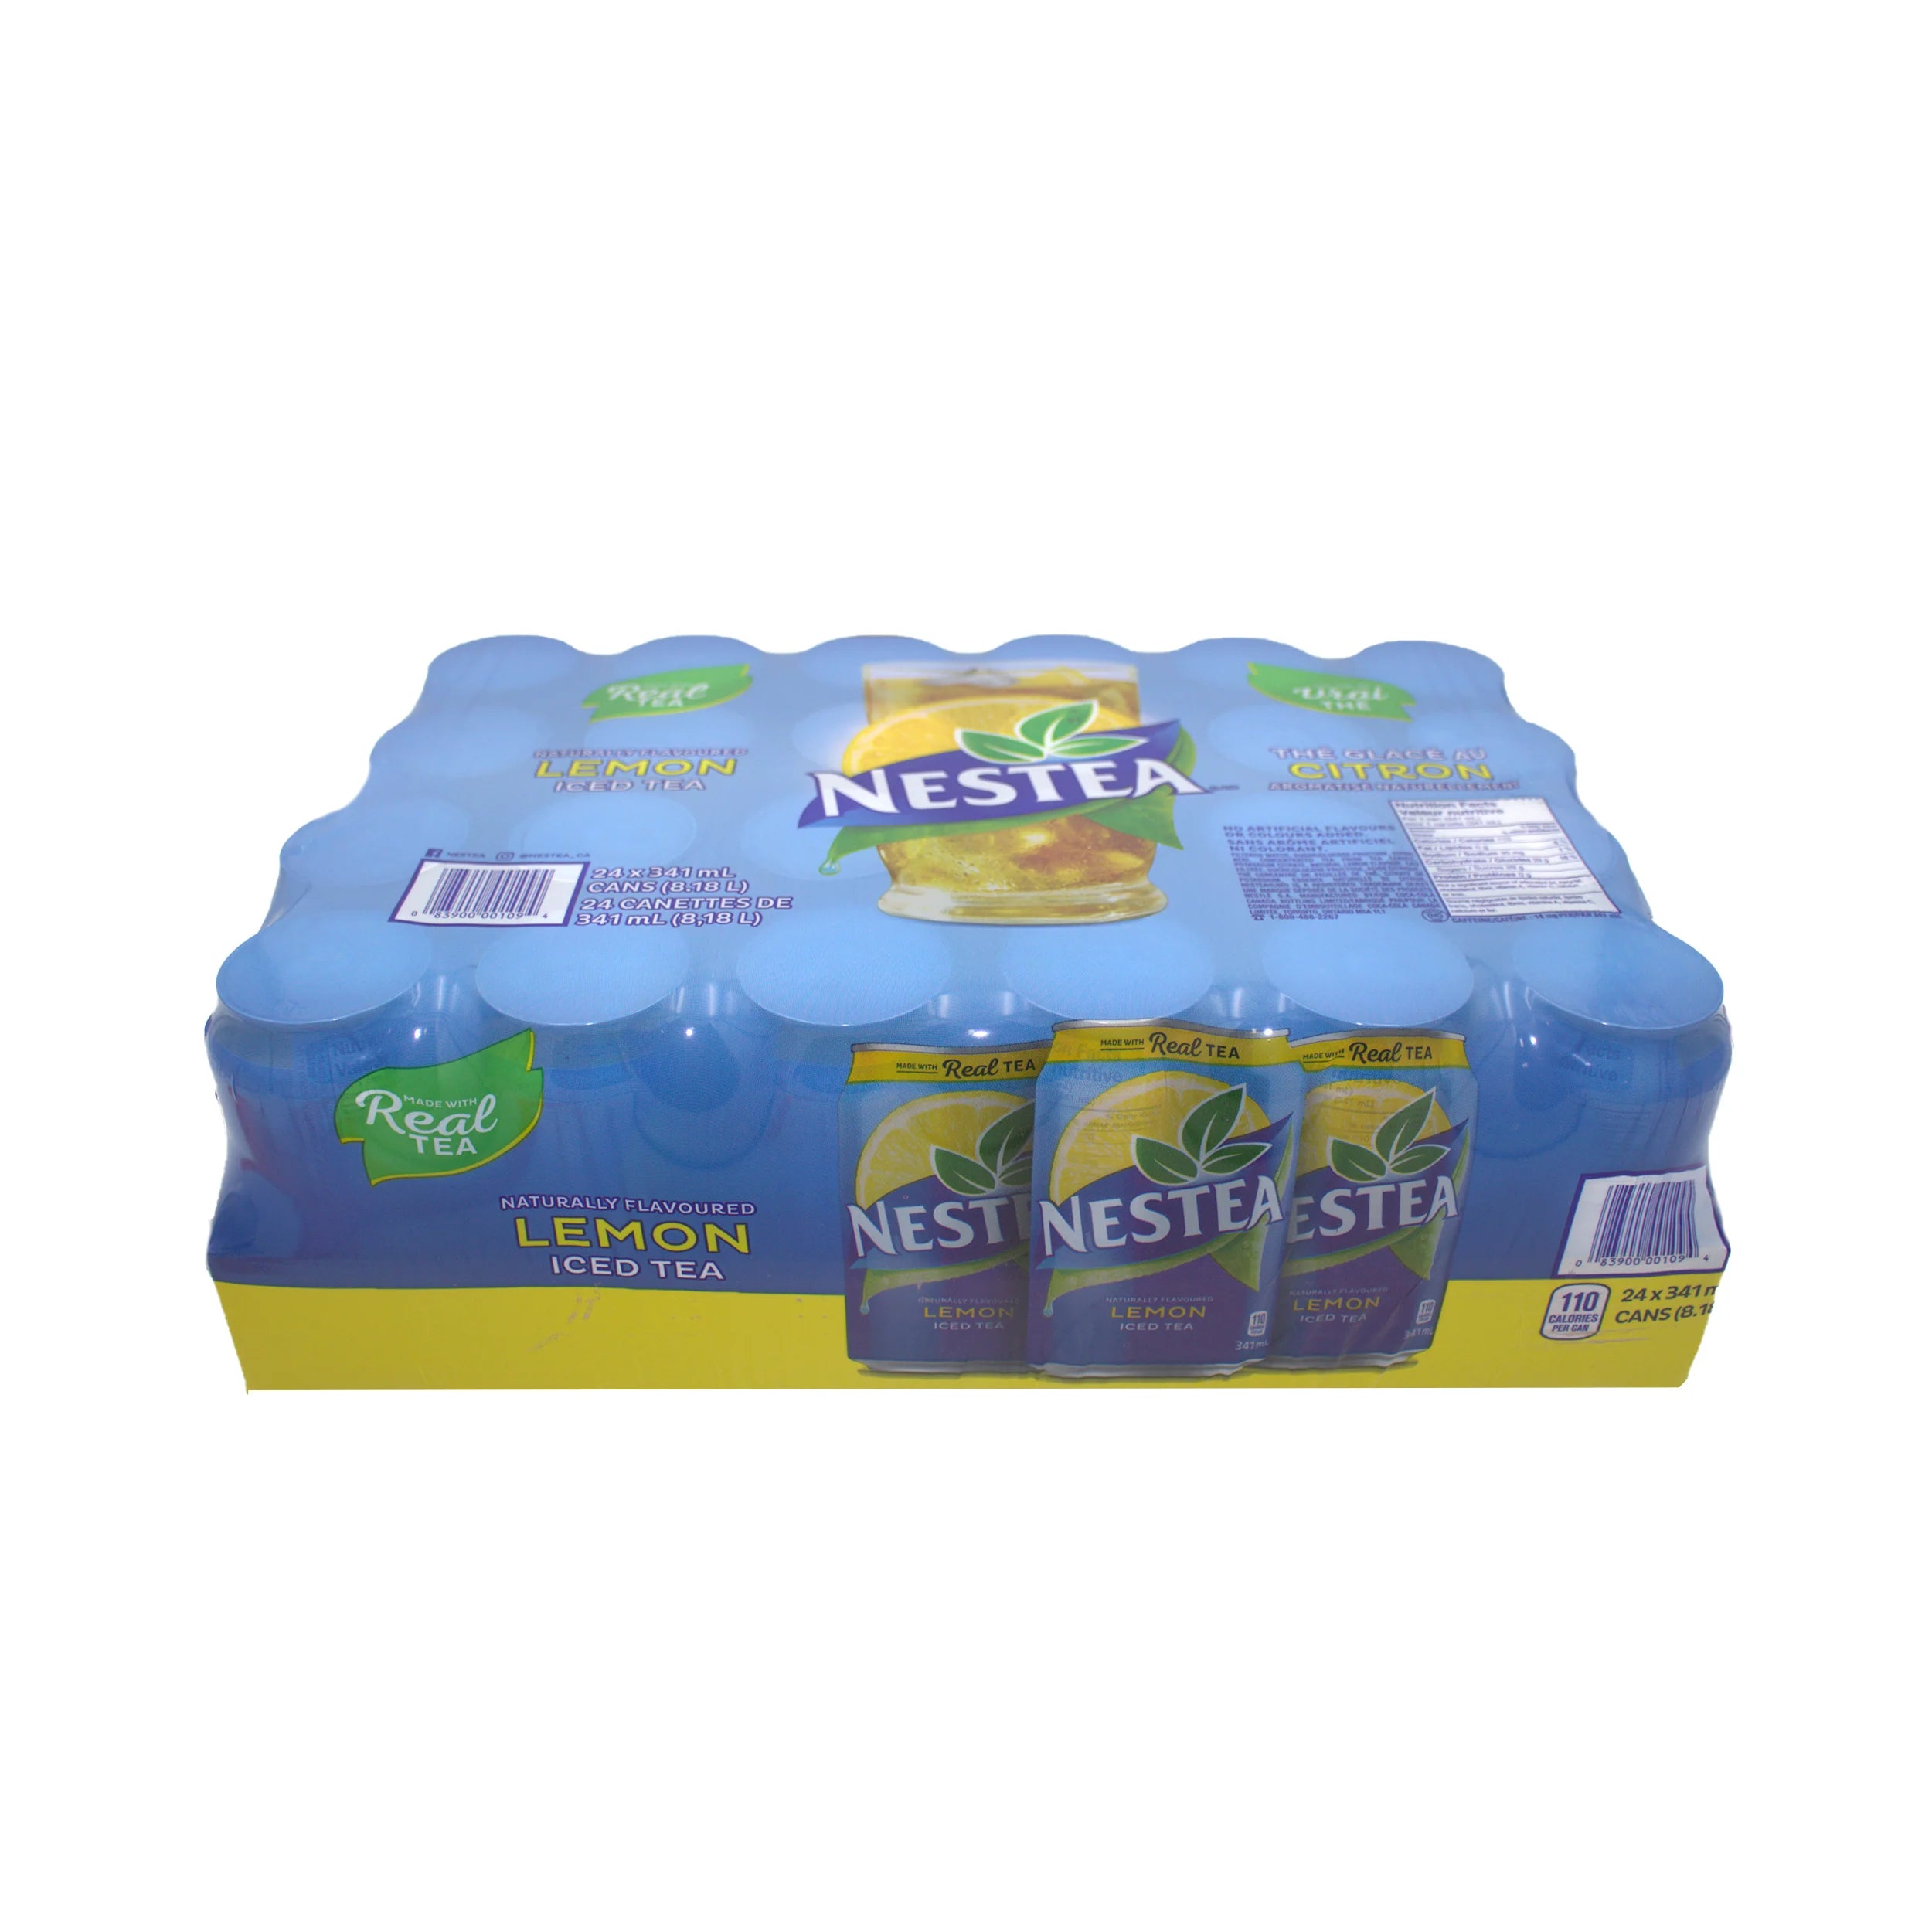 Nestea - Iced Tea - Cans